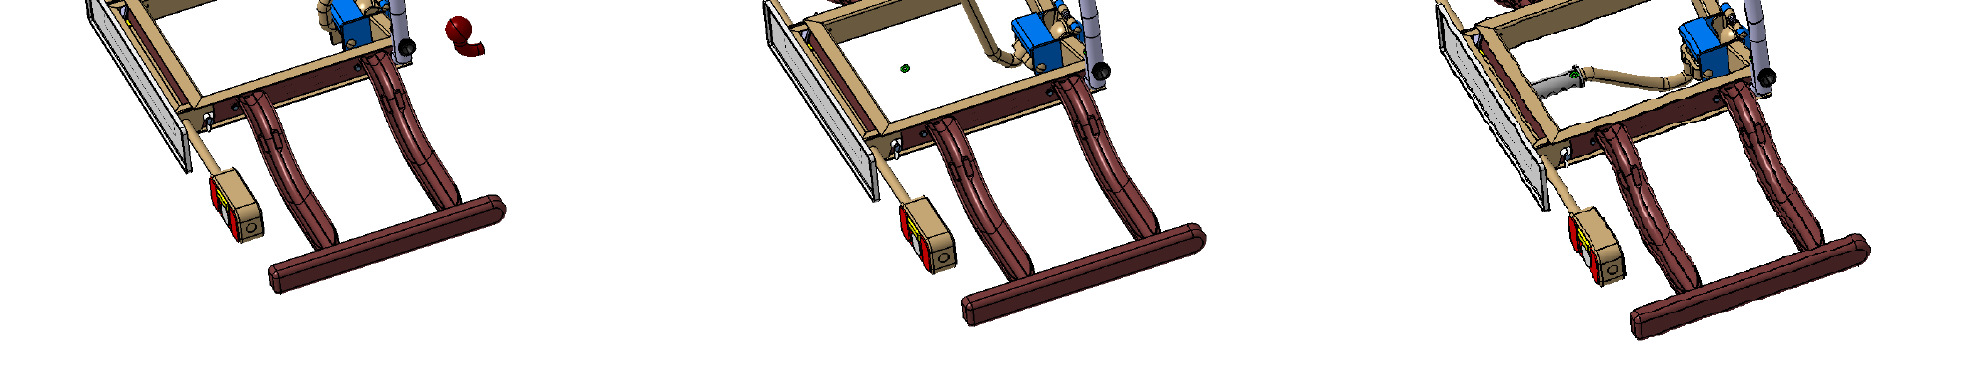 Az tartó elkészült modelljét, és működése: A tartó felszerelése során első lépésként nyitott vonóhorogra rögzítő szerkezettel a vonóhorogra kell helyezni a tartót, majd a rögzítő kar